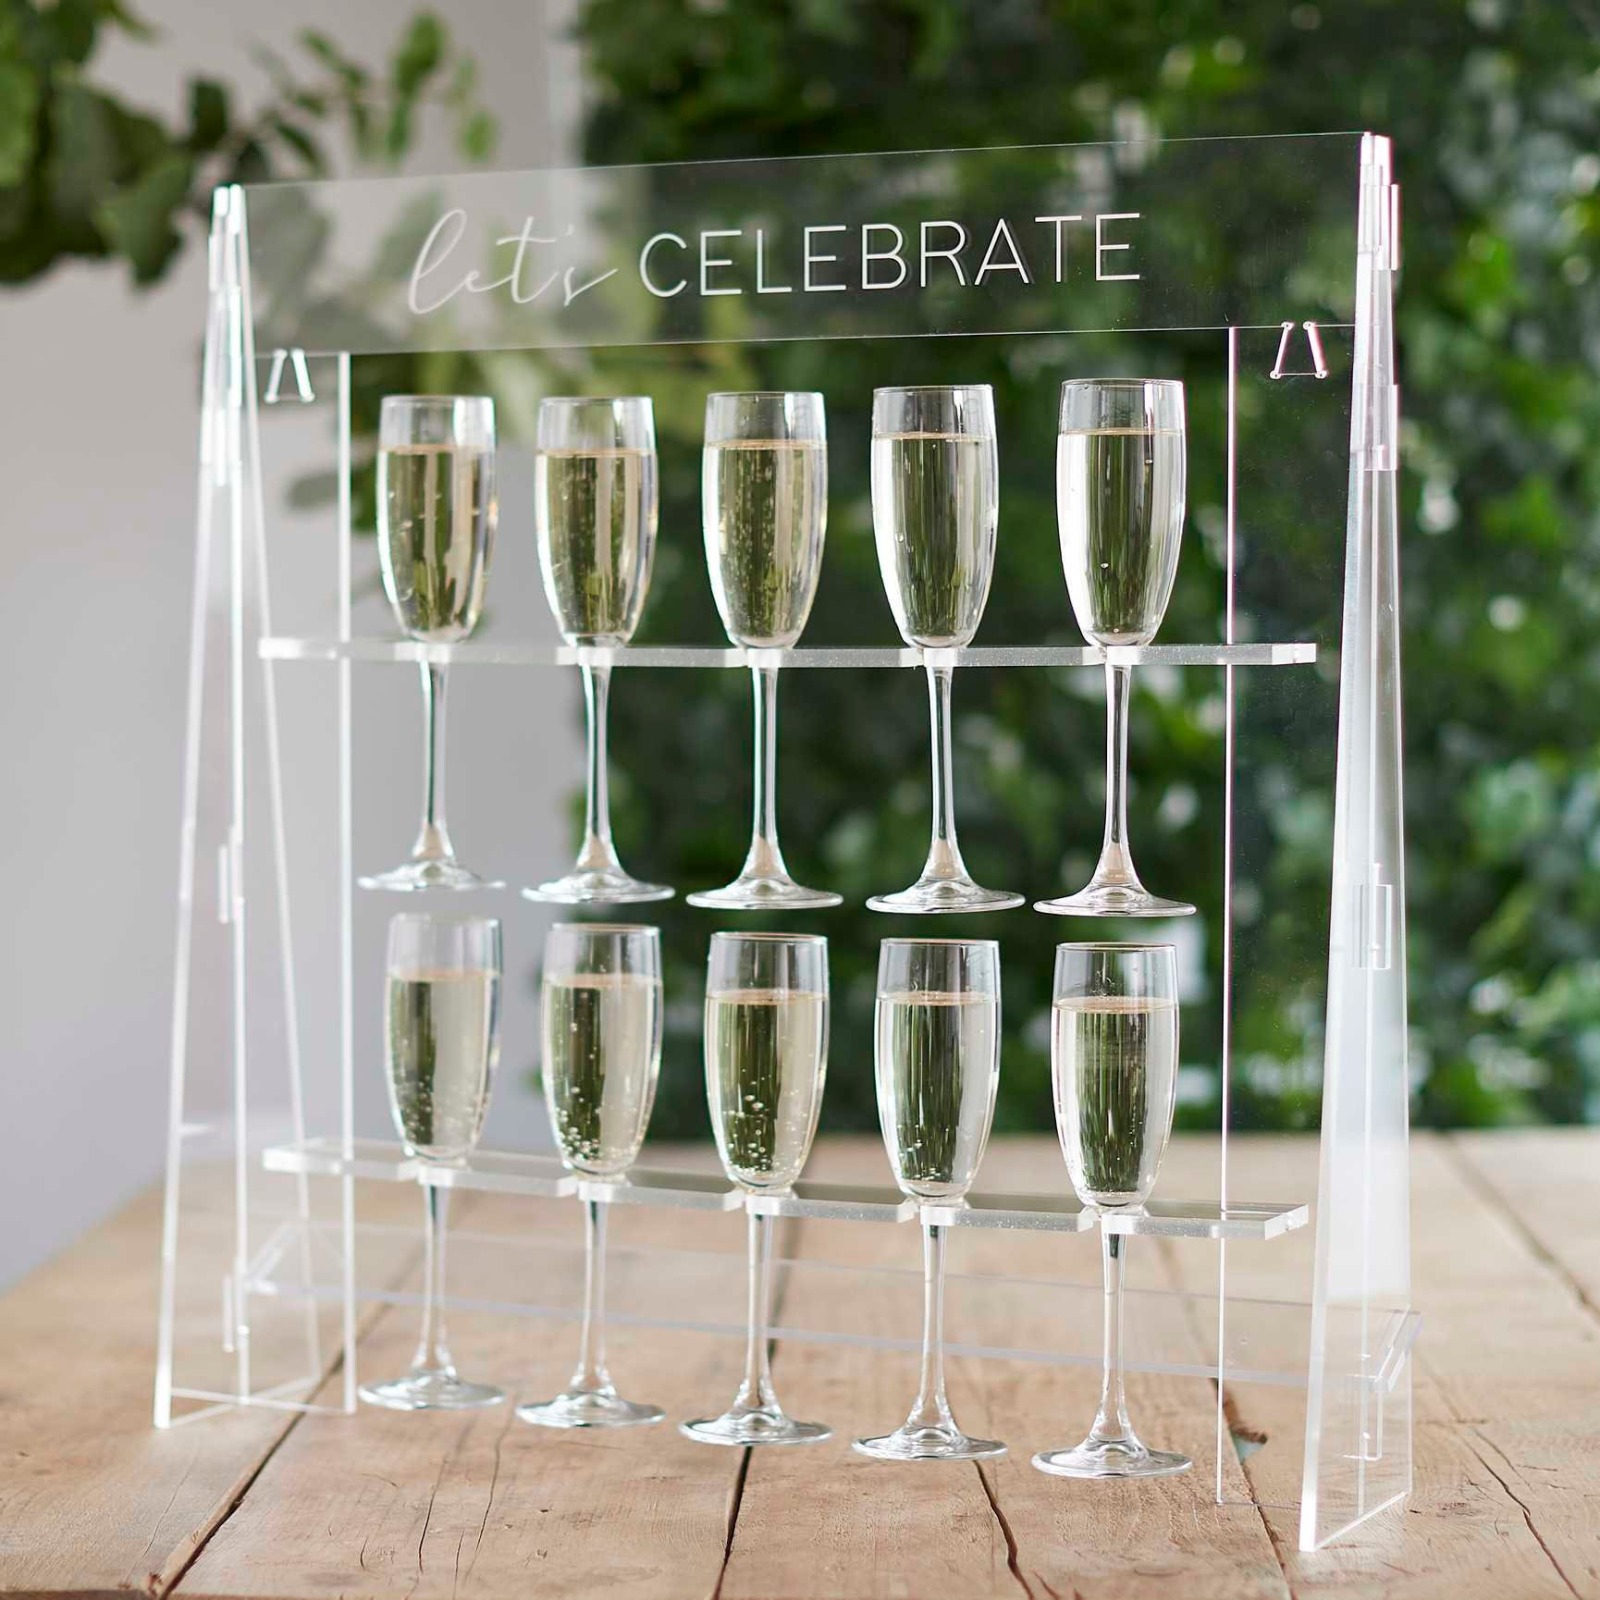 Acryl Sektglas Aufsteller Lets Celebrate Sekt Glashalter im Acryl-Look für 10 Gläser Sektempfang